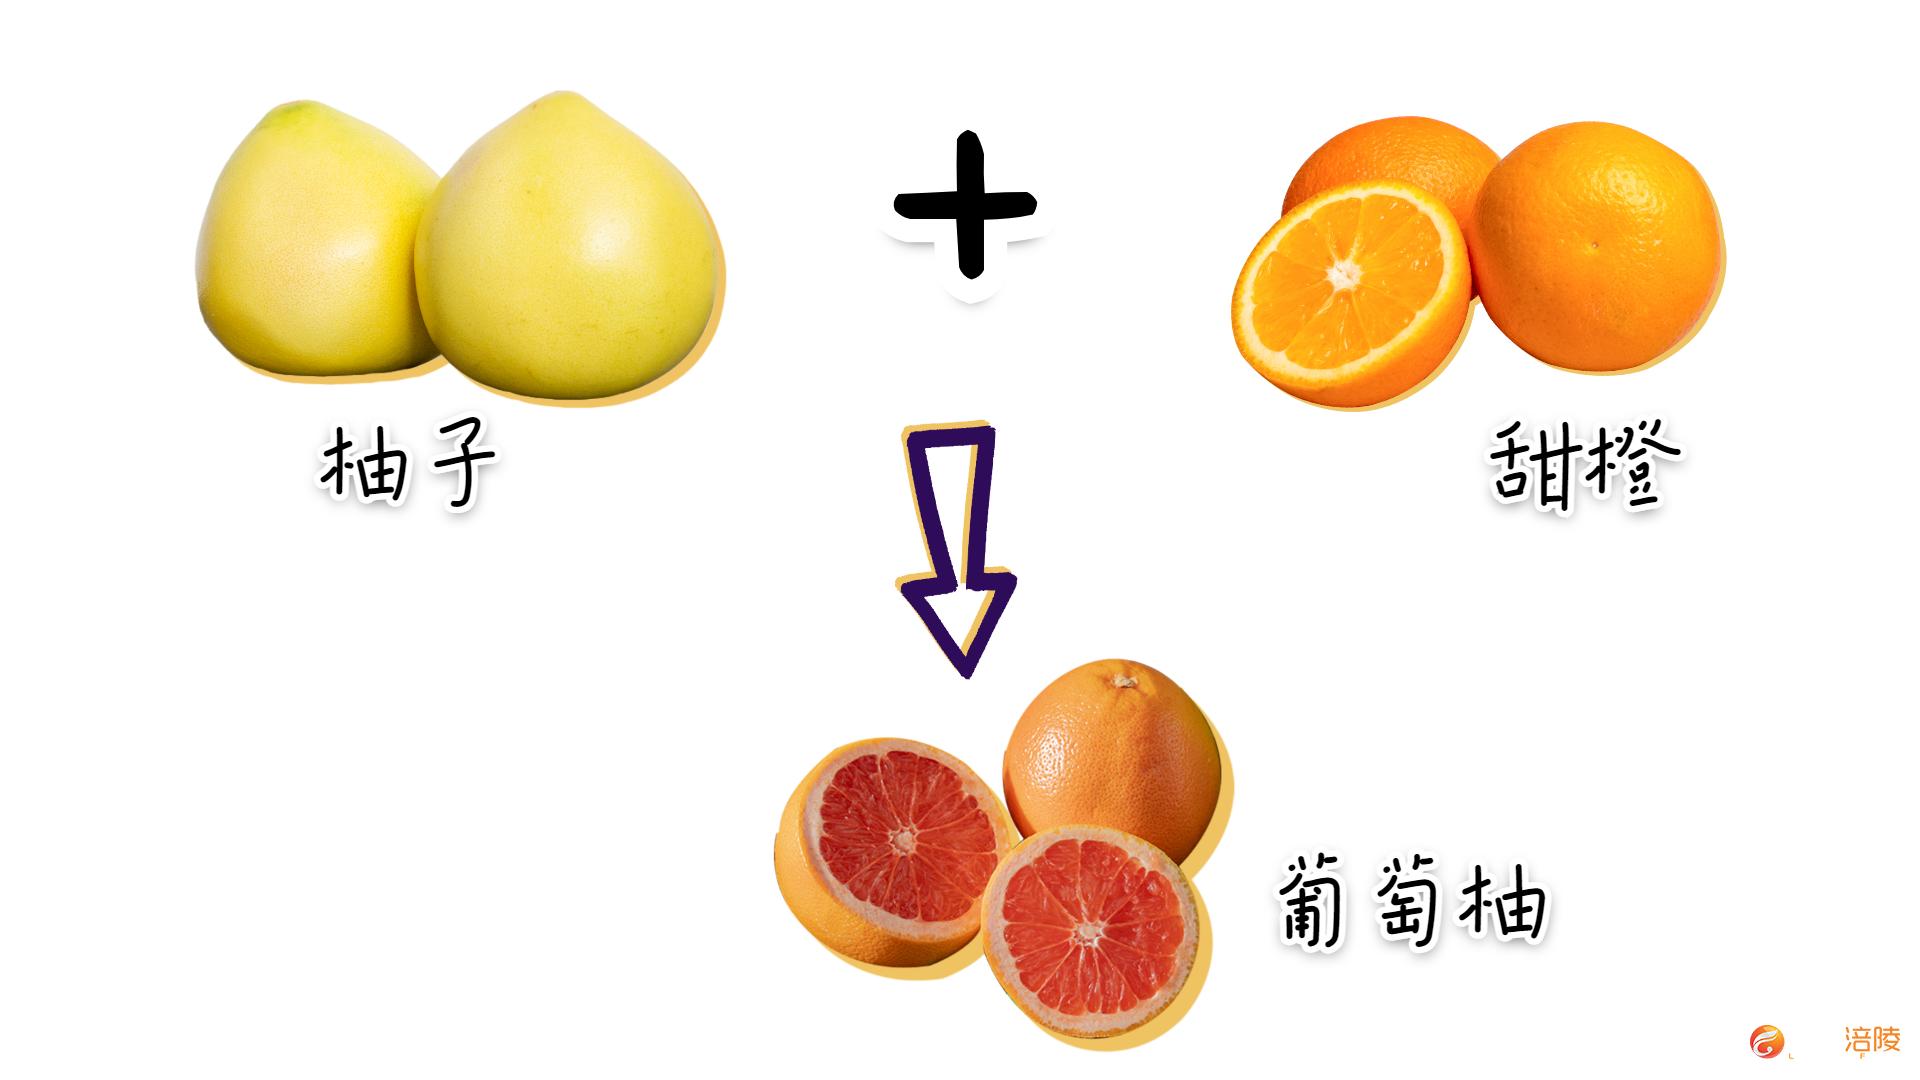 柑橘柚橙 理清一下橘子家族的 混乱 关系